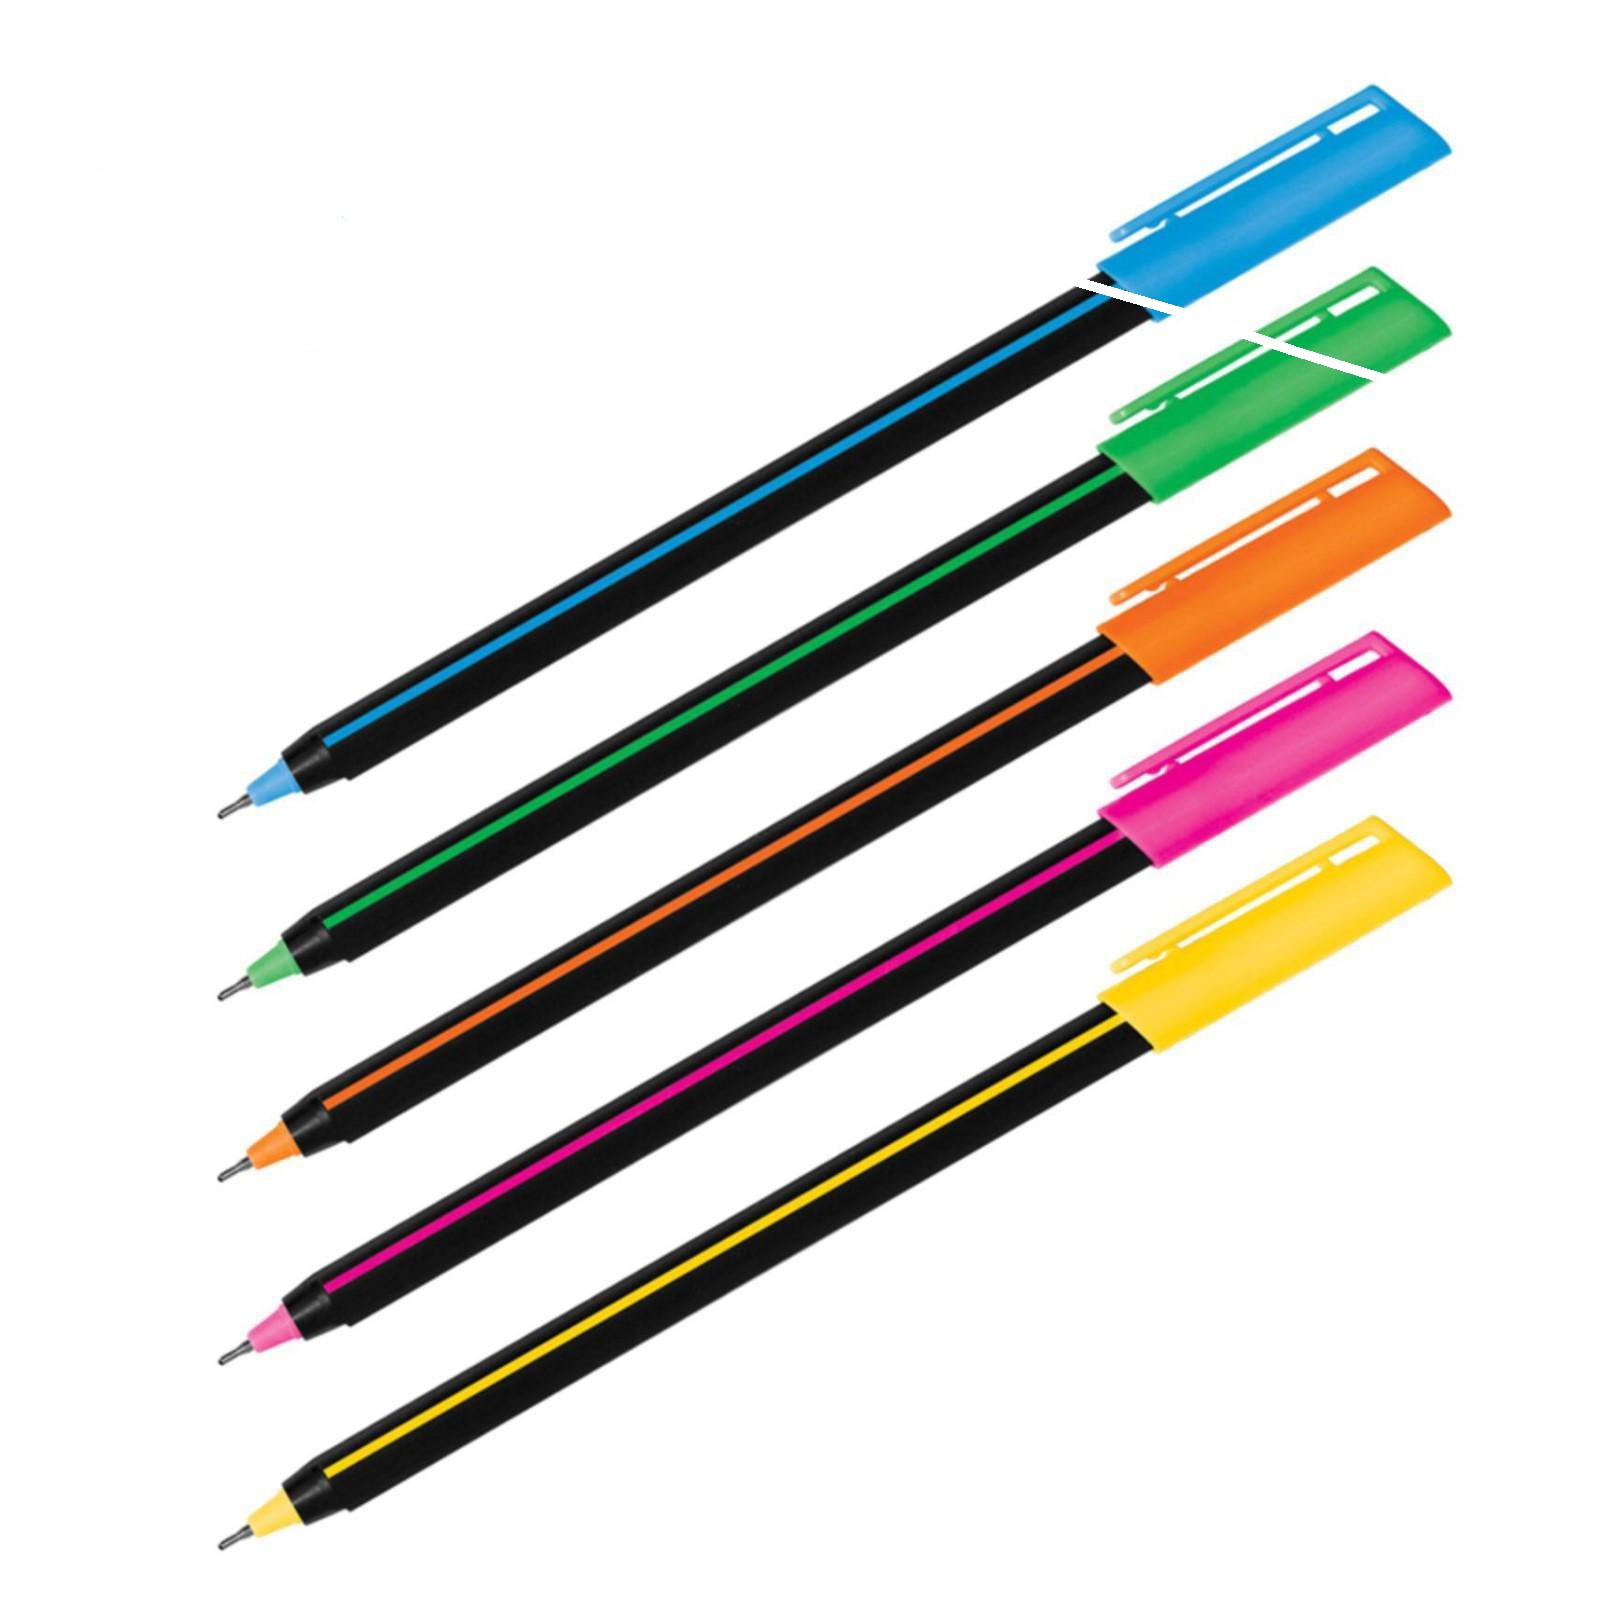 Ручка шариковая Luxor Stick Soft Touch синяя, 0,7мм, корпус ассорти